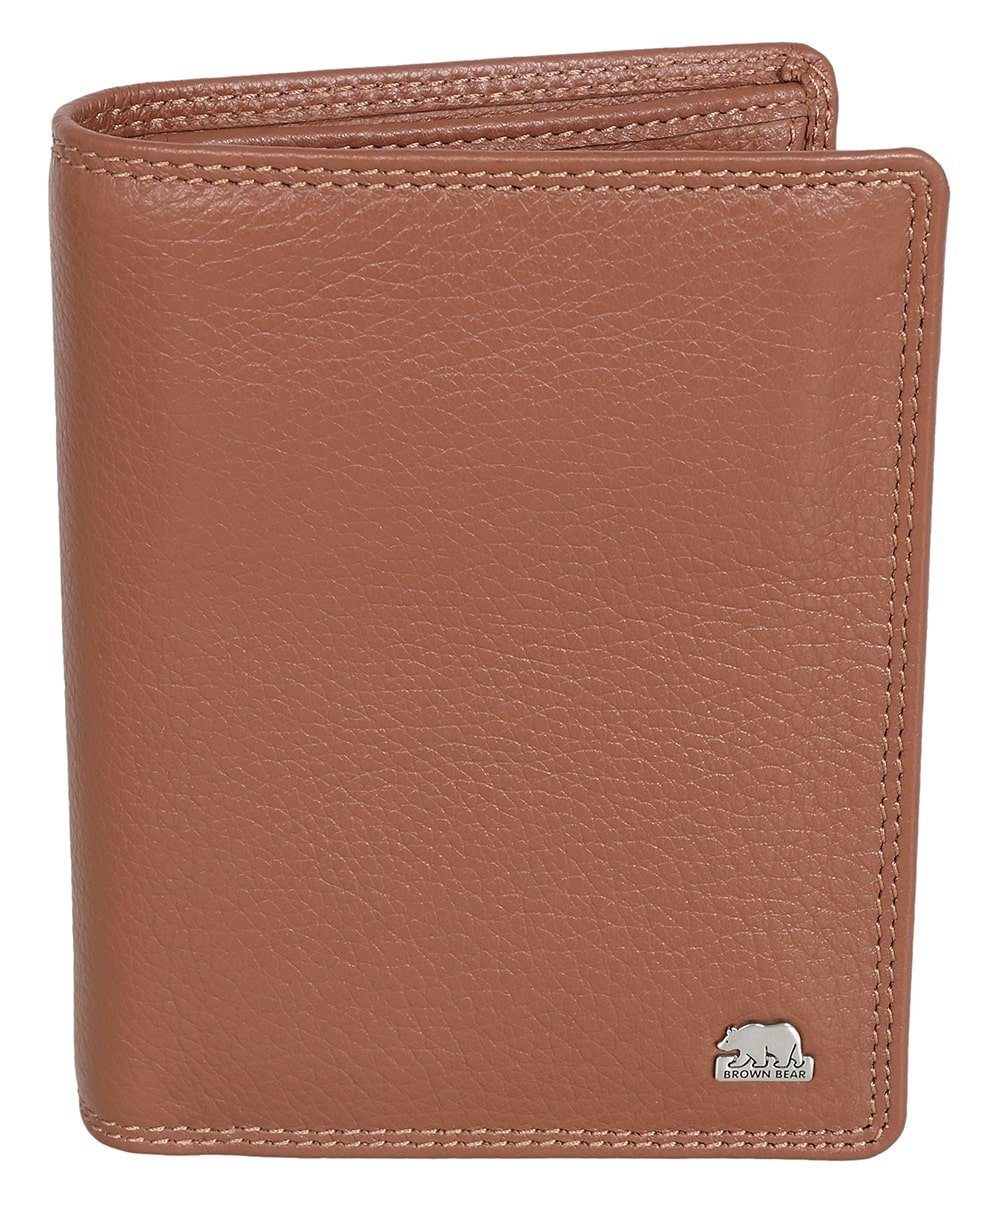 Brown Bear Geldbörse Classic 8005 D LF - Farbe: Braun-Camel, Brieftasche Lederbörse mit Münzfach RFID Schutz Braun Cognac | Geldbörsen